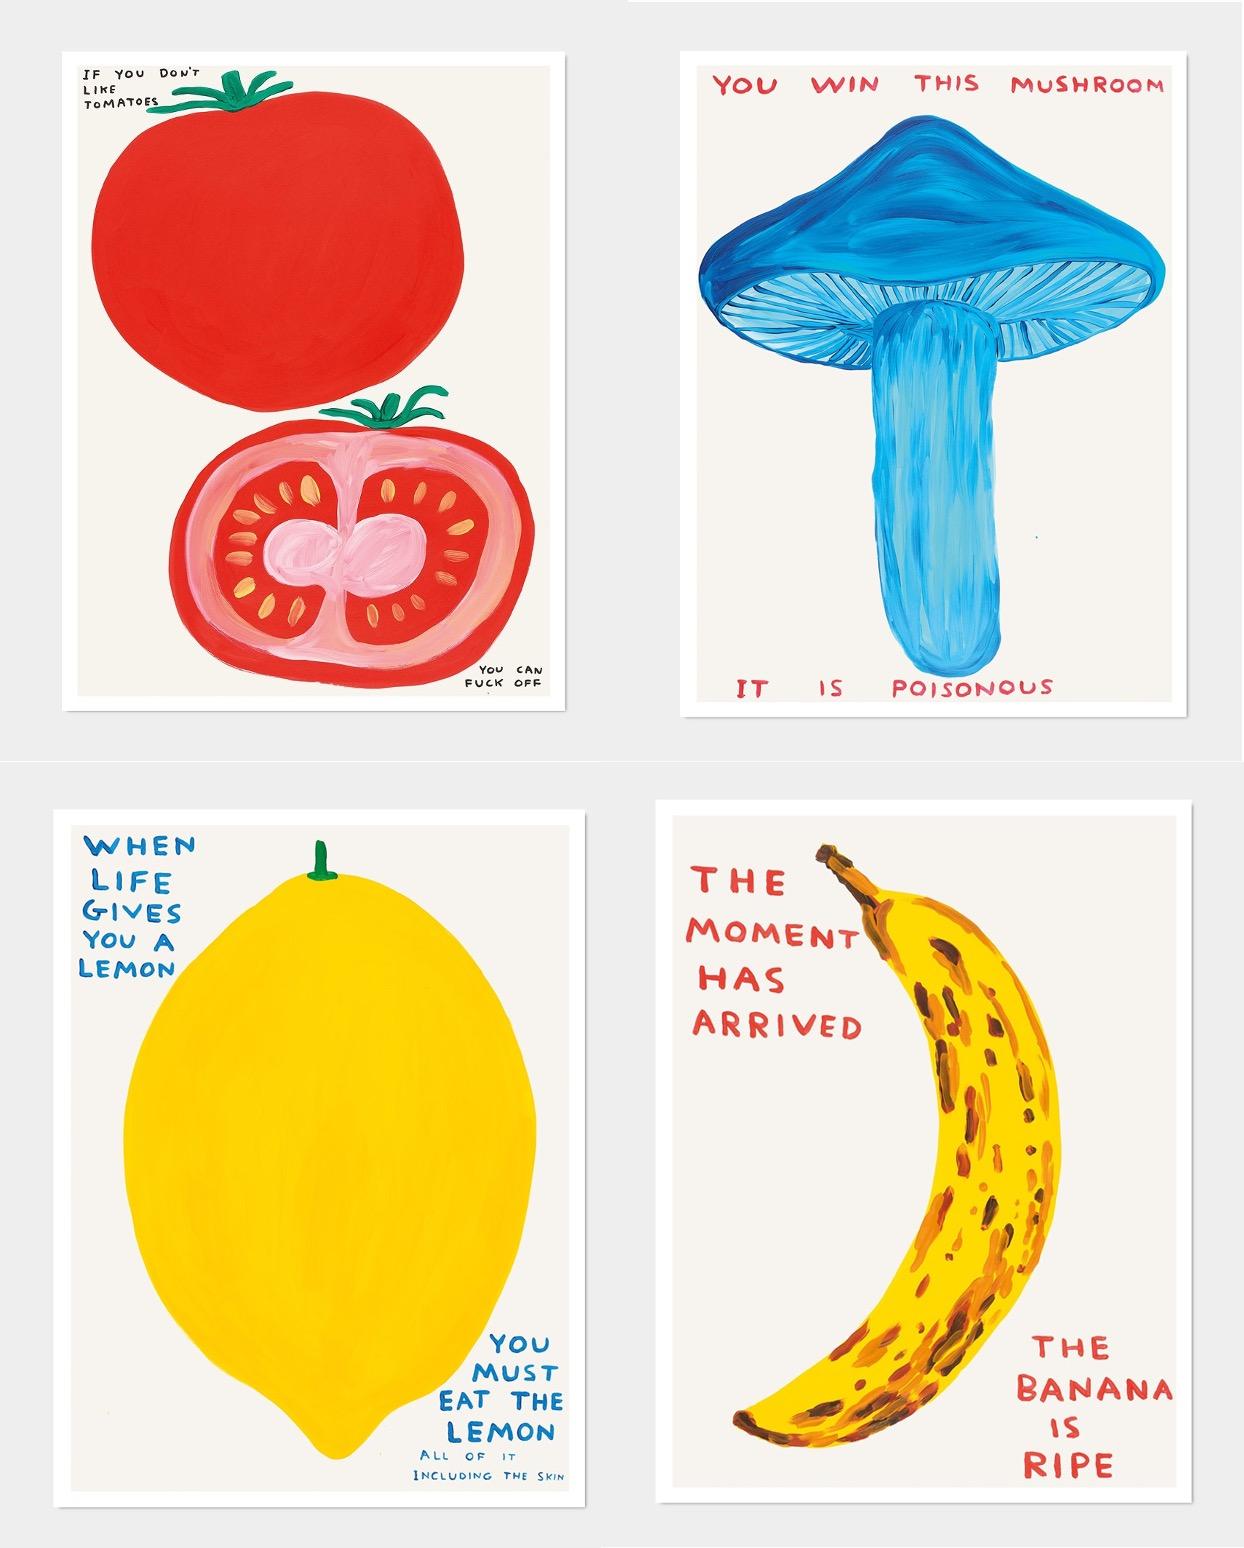 David Shrigley
Série Fruits et légumes (ensemble de 4 tirages), 2020-2021
Comprenant :
Quand la vie vous donne un citron, 2021
Vous gagnez ce champignon (Mushroom), 2020
Le moment est venu (Banane), 2021
Si vous n'aimez pas les tomates, 2020
80 x 60